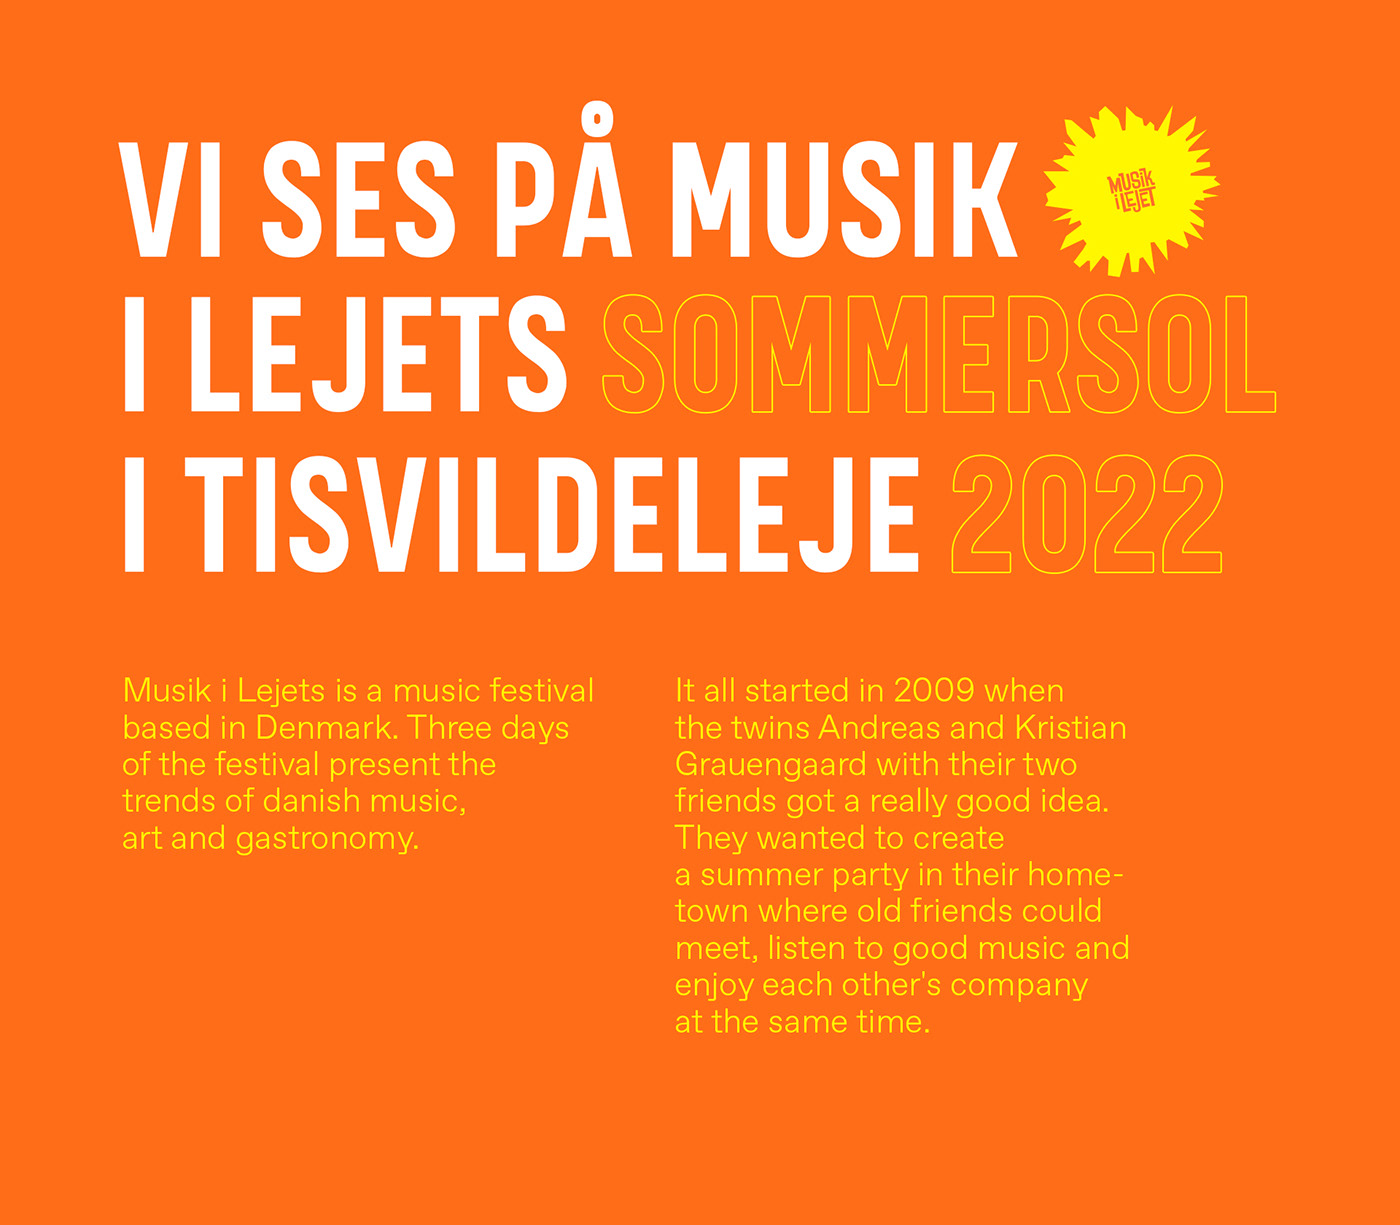 brand identity branding  concert festival Music Festival Poster Design social media Web Design  Advertising  graphic design 